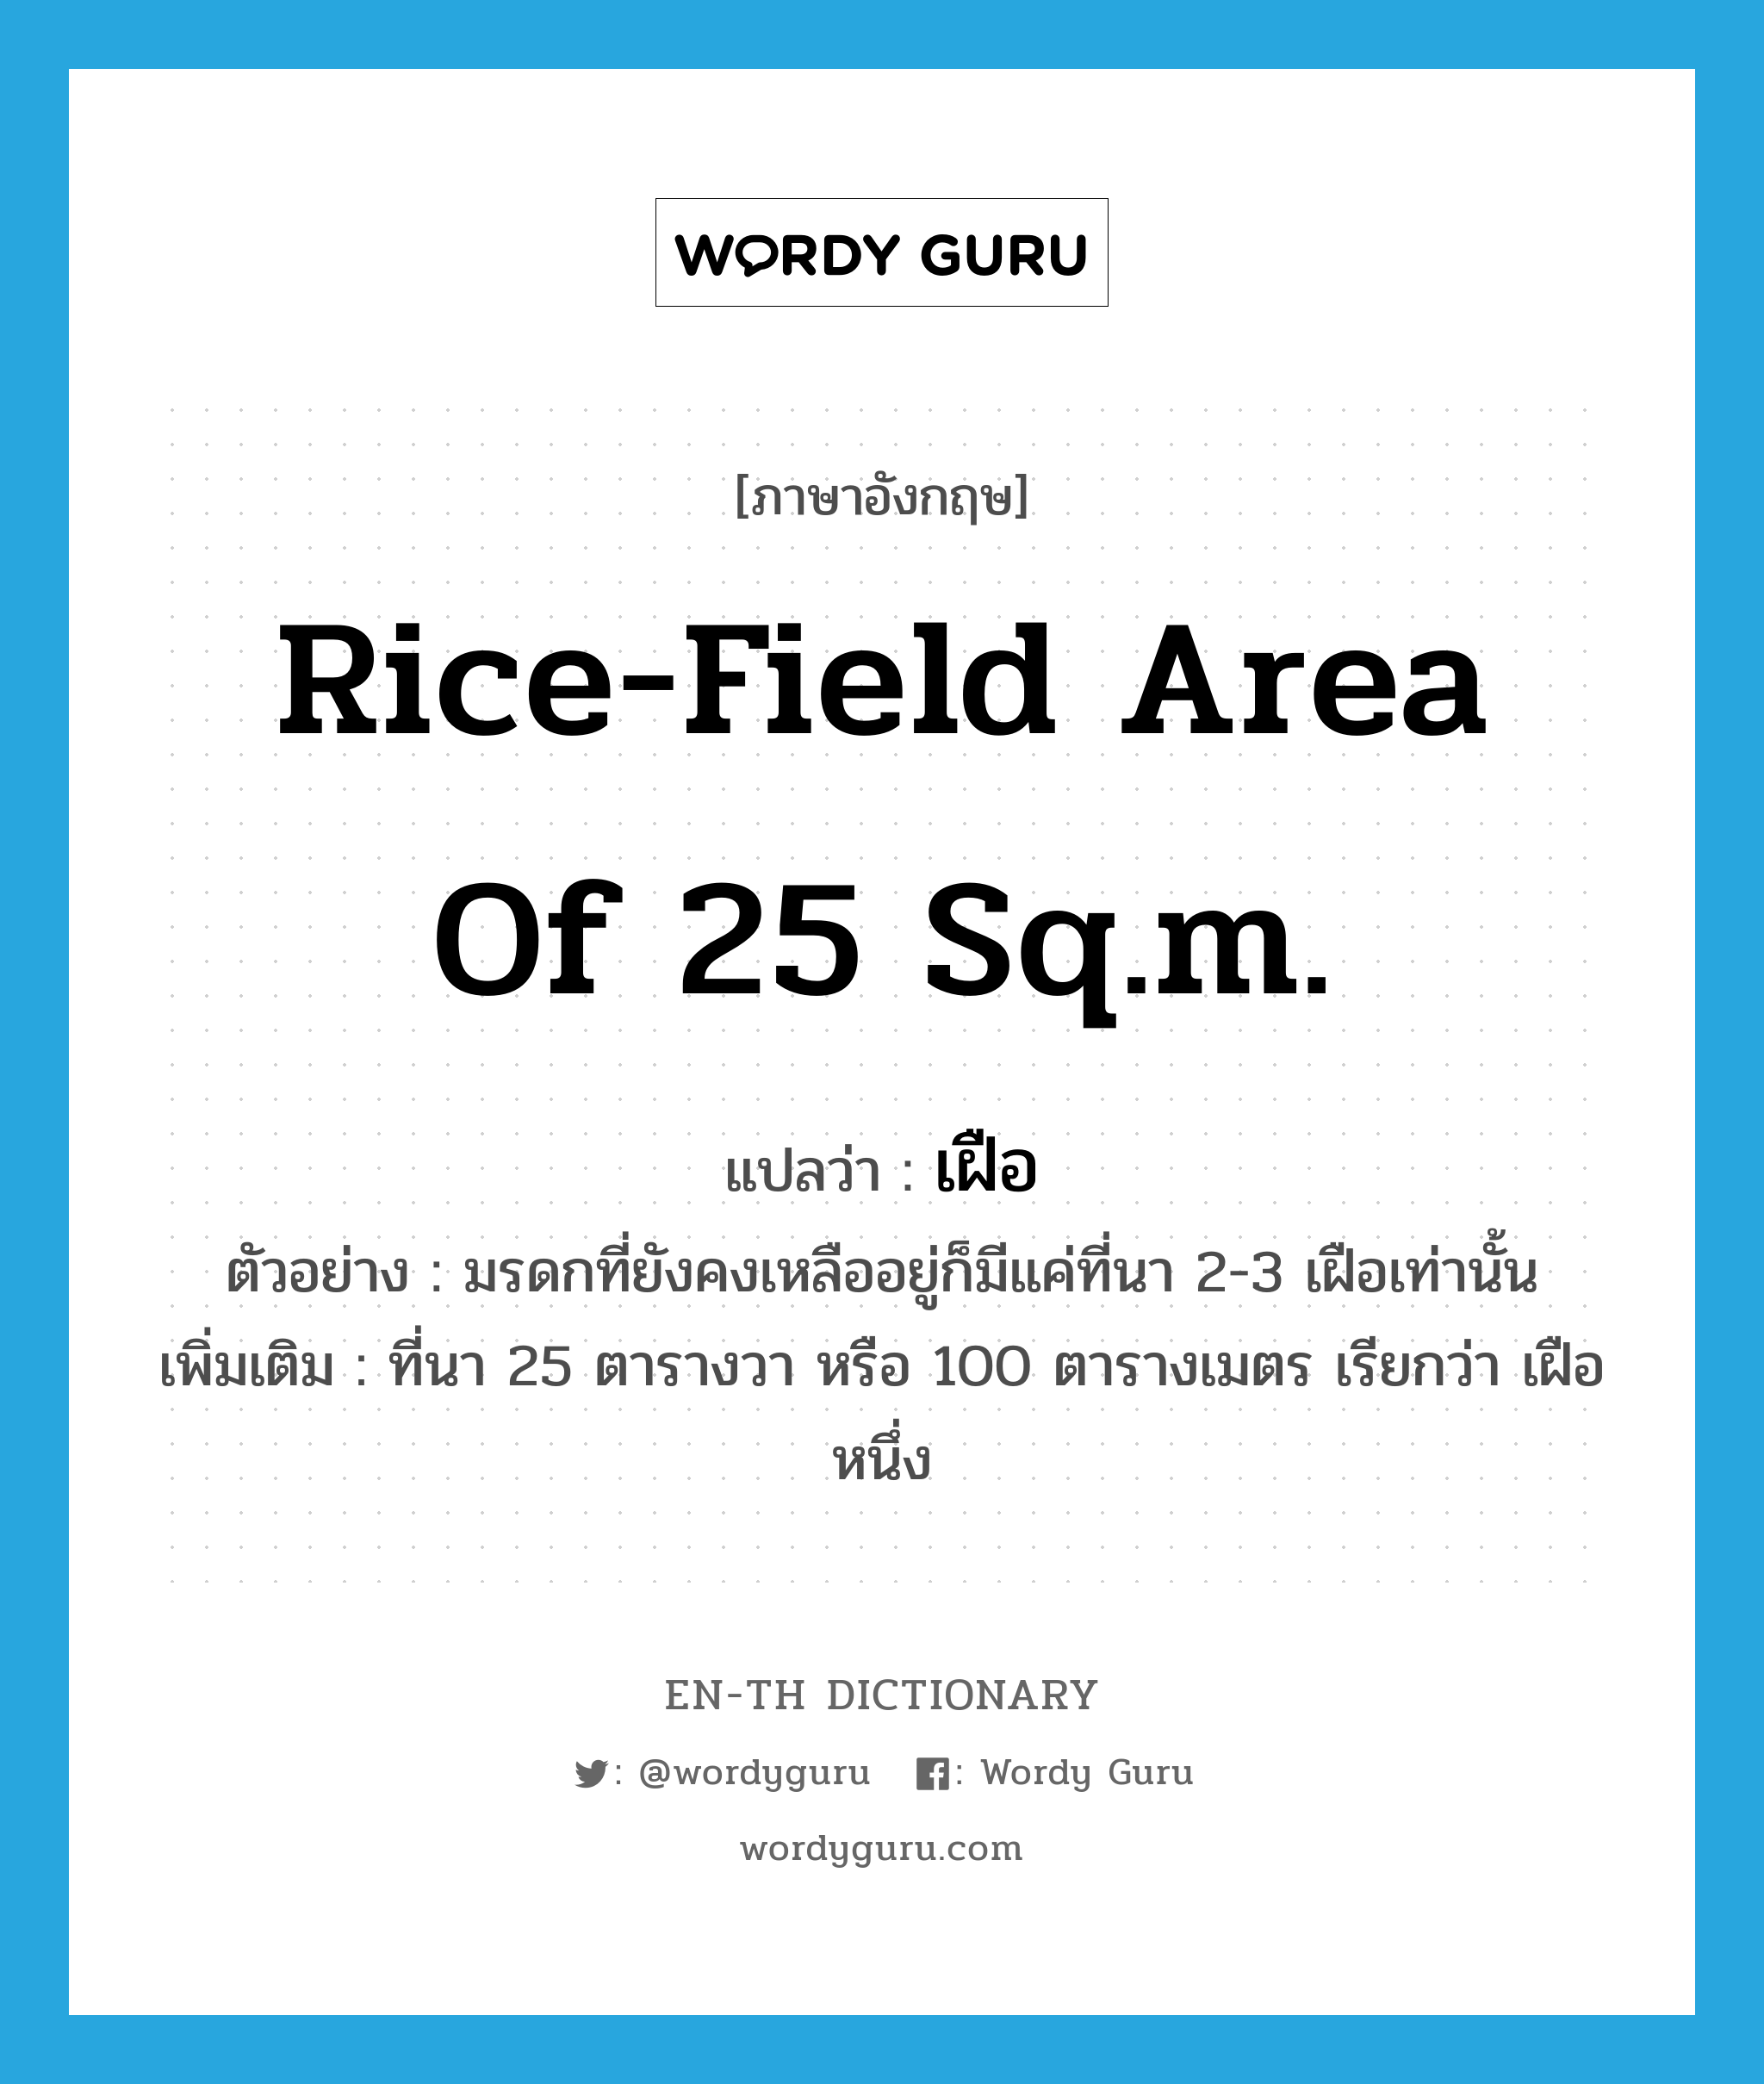 เฝือ ภาษาอังกฤษ?, คำศัพท์ภาษาอังกฤษ เฝือ แปลว่า rice-field area of 25 sq.m. ประเภท N ตัวอย่าง มรดกที่ยังคงเหลืออยู่ก็มีแค่ที่นา 2-3 เฝือเท่านั้น เพิ่มเติม ที่นา 25 ตารางวา หรือ 100 ตารางเมตร เรียกว่า เฝือหนึ่ง หมวด N